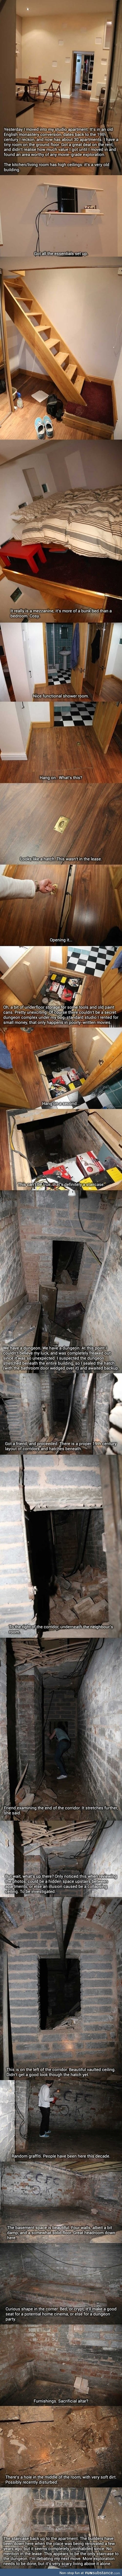 A hidden dungeon in an apartment